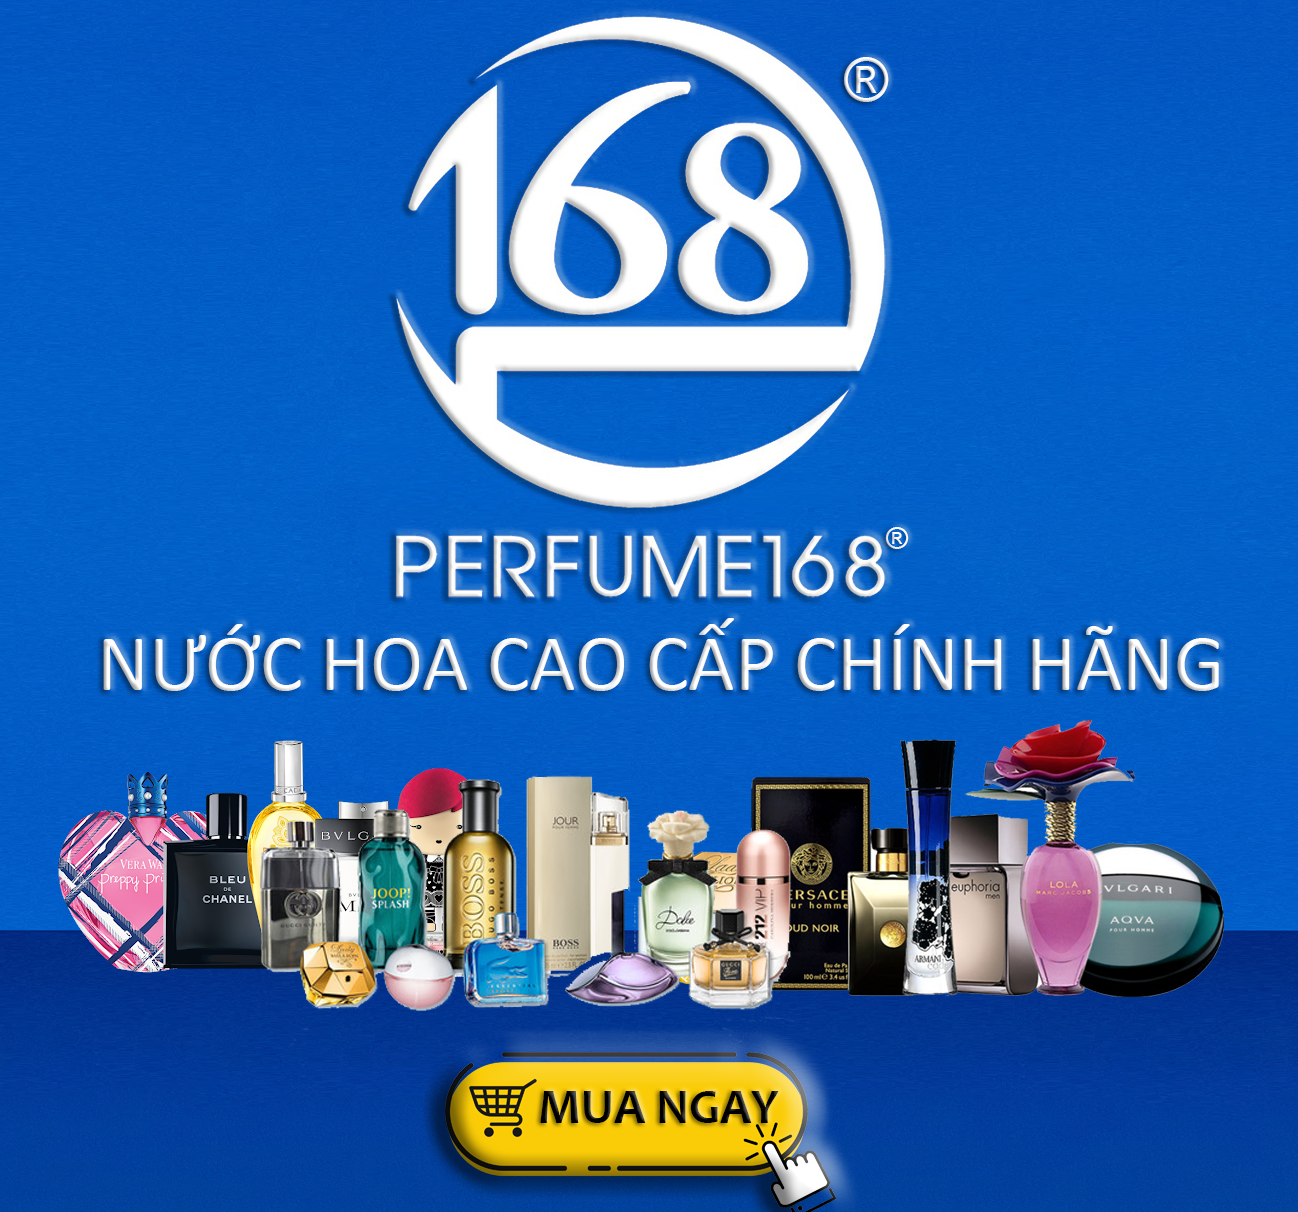 Nước hoa chính hãng 100% nhập khẩu Pháp, Mỹ…Giá tốt tại Perfume168